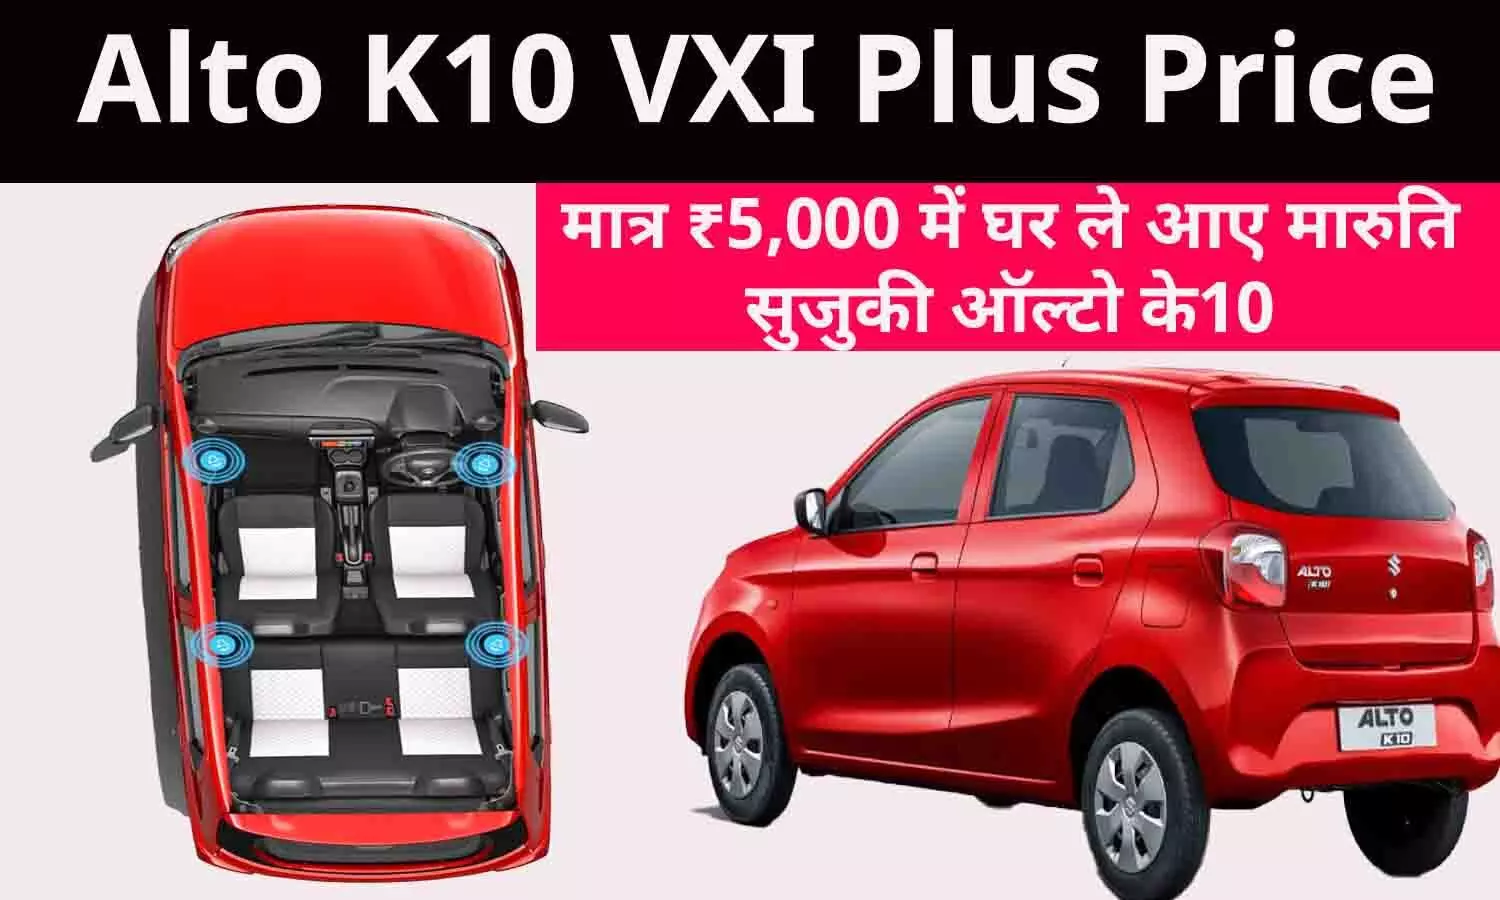 Alto K10 VXI Plus Price: मात्र ₹5,000 में घर ले आए मारुति सुजुकी ऑल्टो के10?